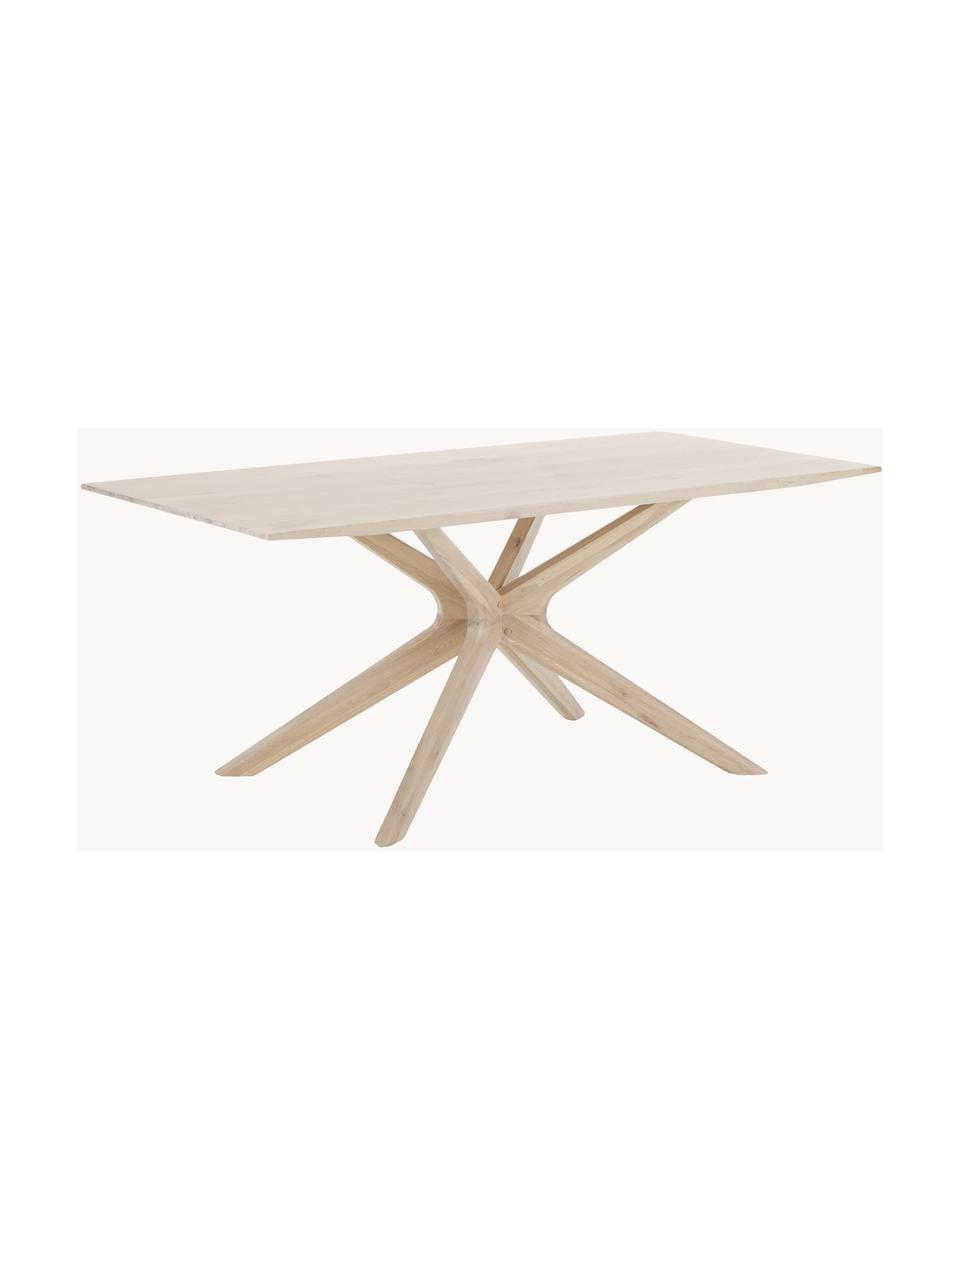 Jedálenský stôl z dubového dreva Armande, 180 x 90 cm, Dubové drevo, voskované, biela lakovaná, Dubové drevo, Š 180 x H 90 cm